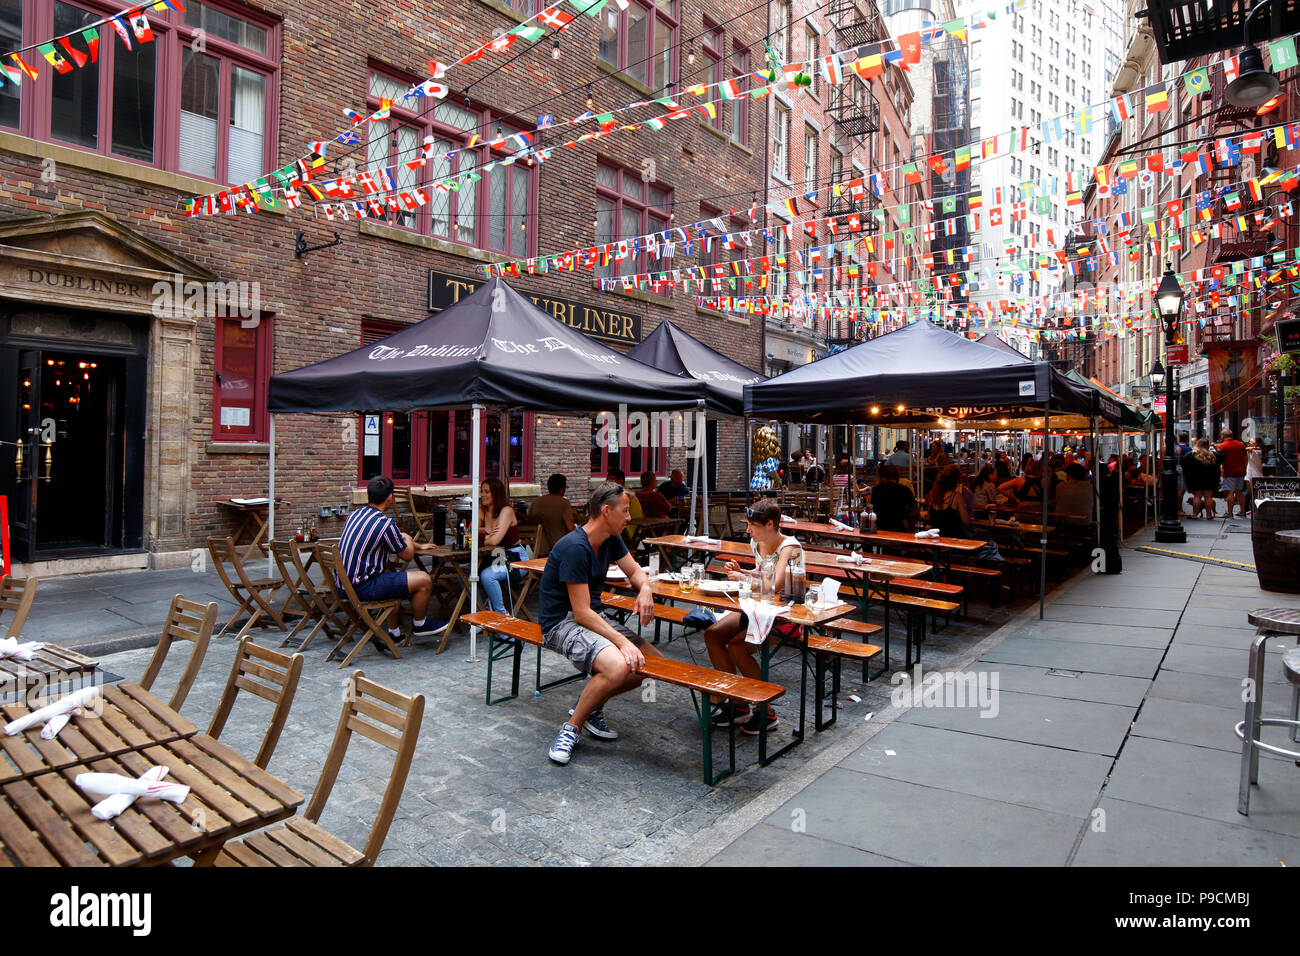 Picknicktische setup für Essen im Freien auf der Stone Street in Lower Manhattan, New York, NY. Stockfoto